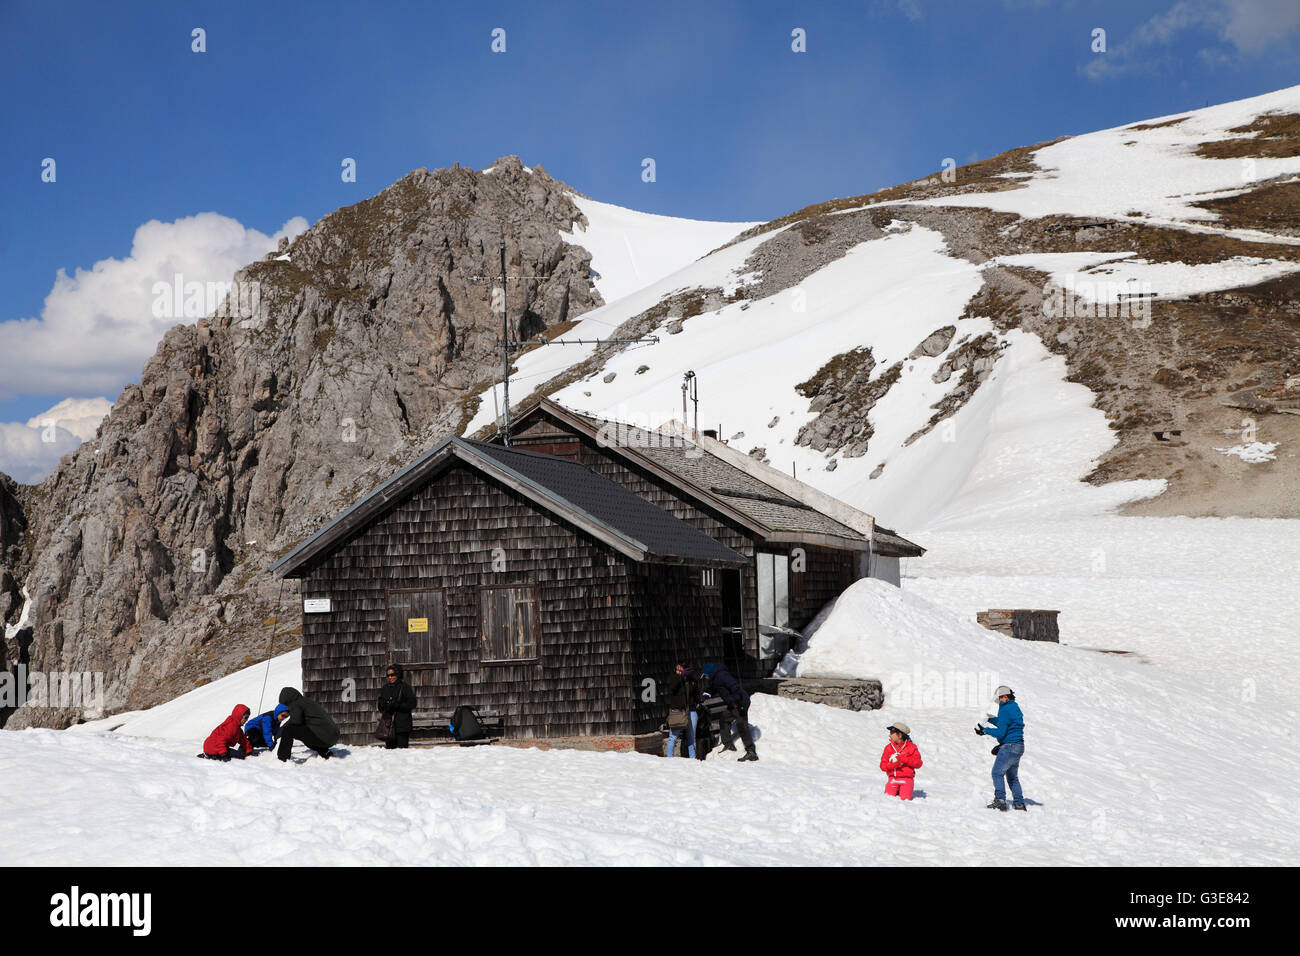 Austria, Tyrol, Alps, Innsbruck, Hafelekar, mountain hut, people, Stock Photo